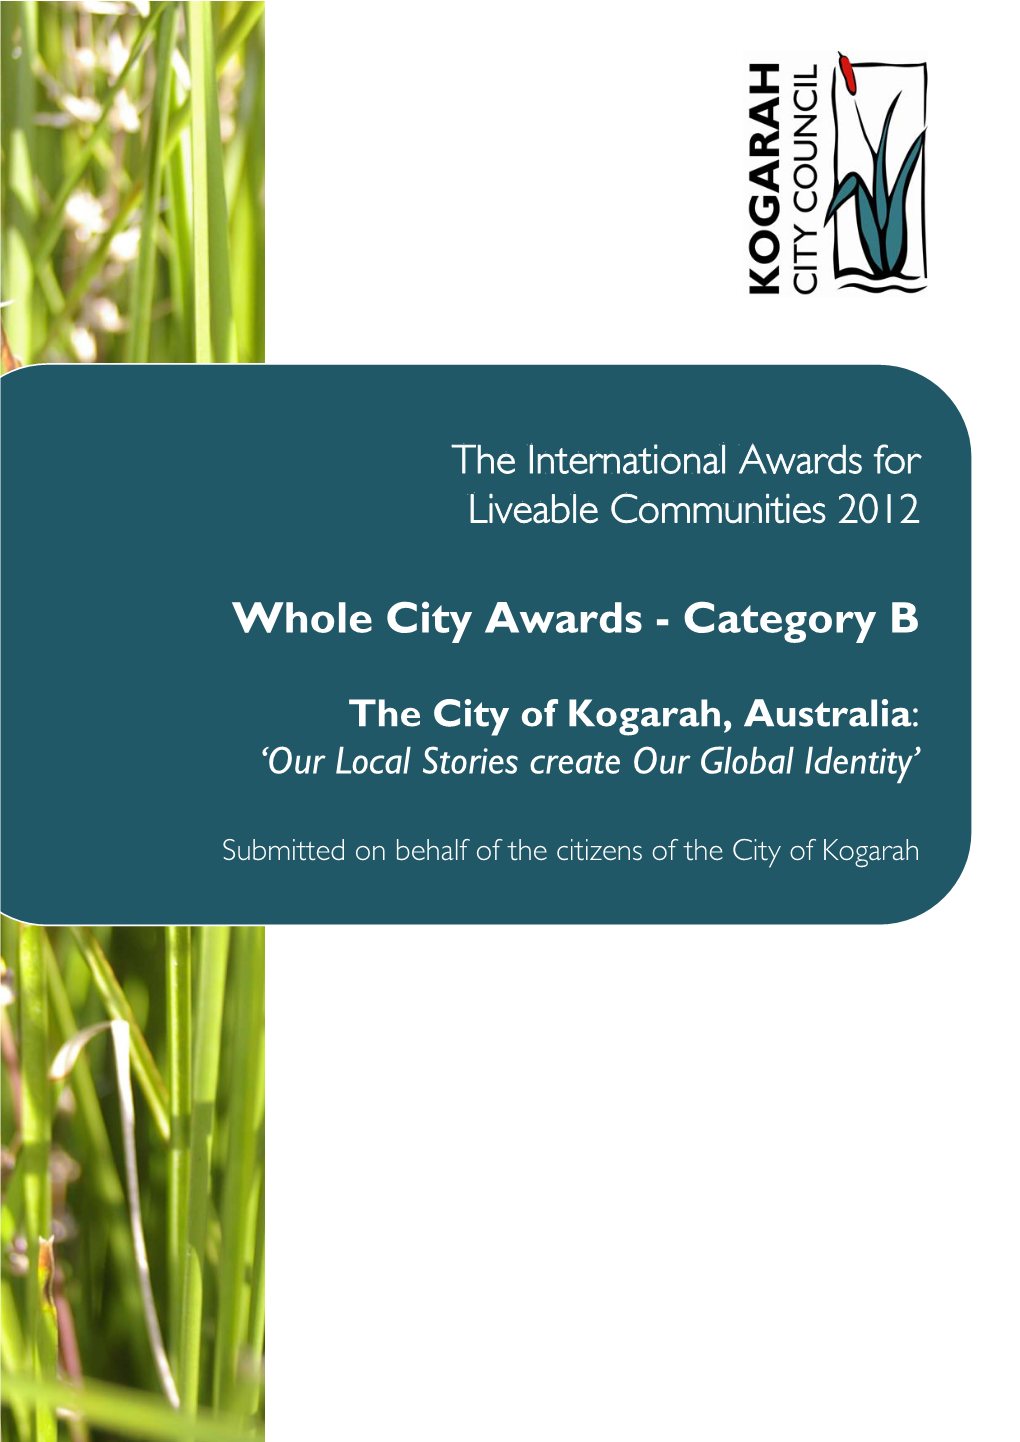 Whole City Awards - Category B